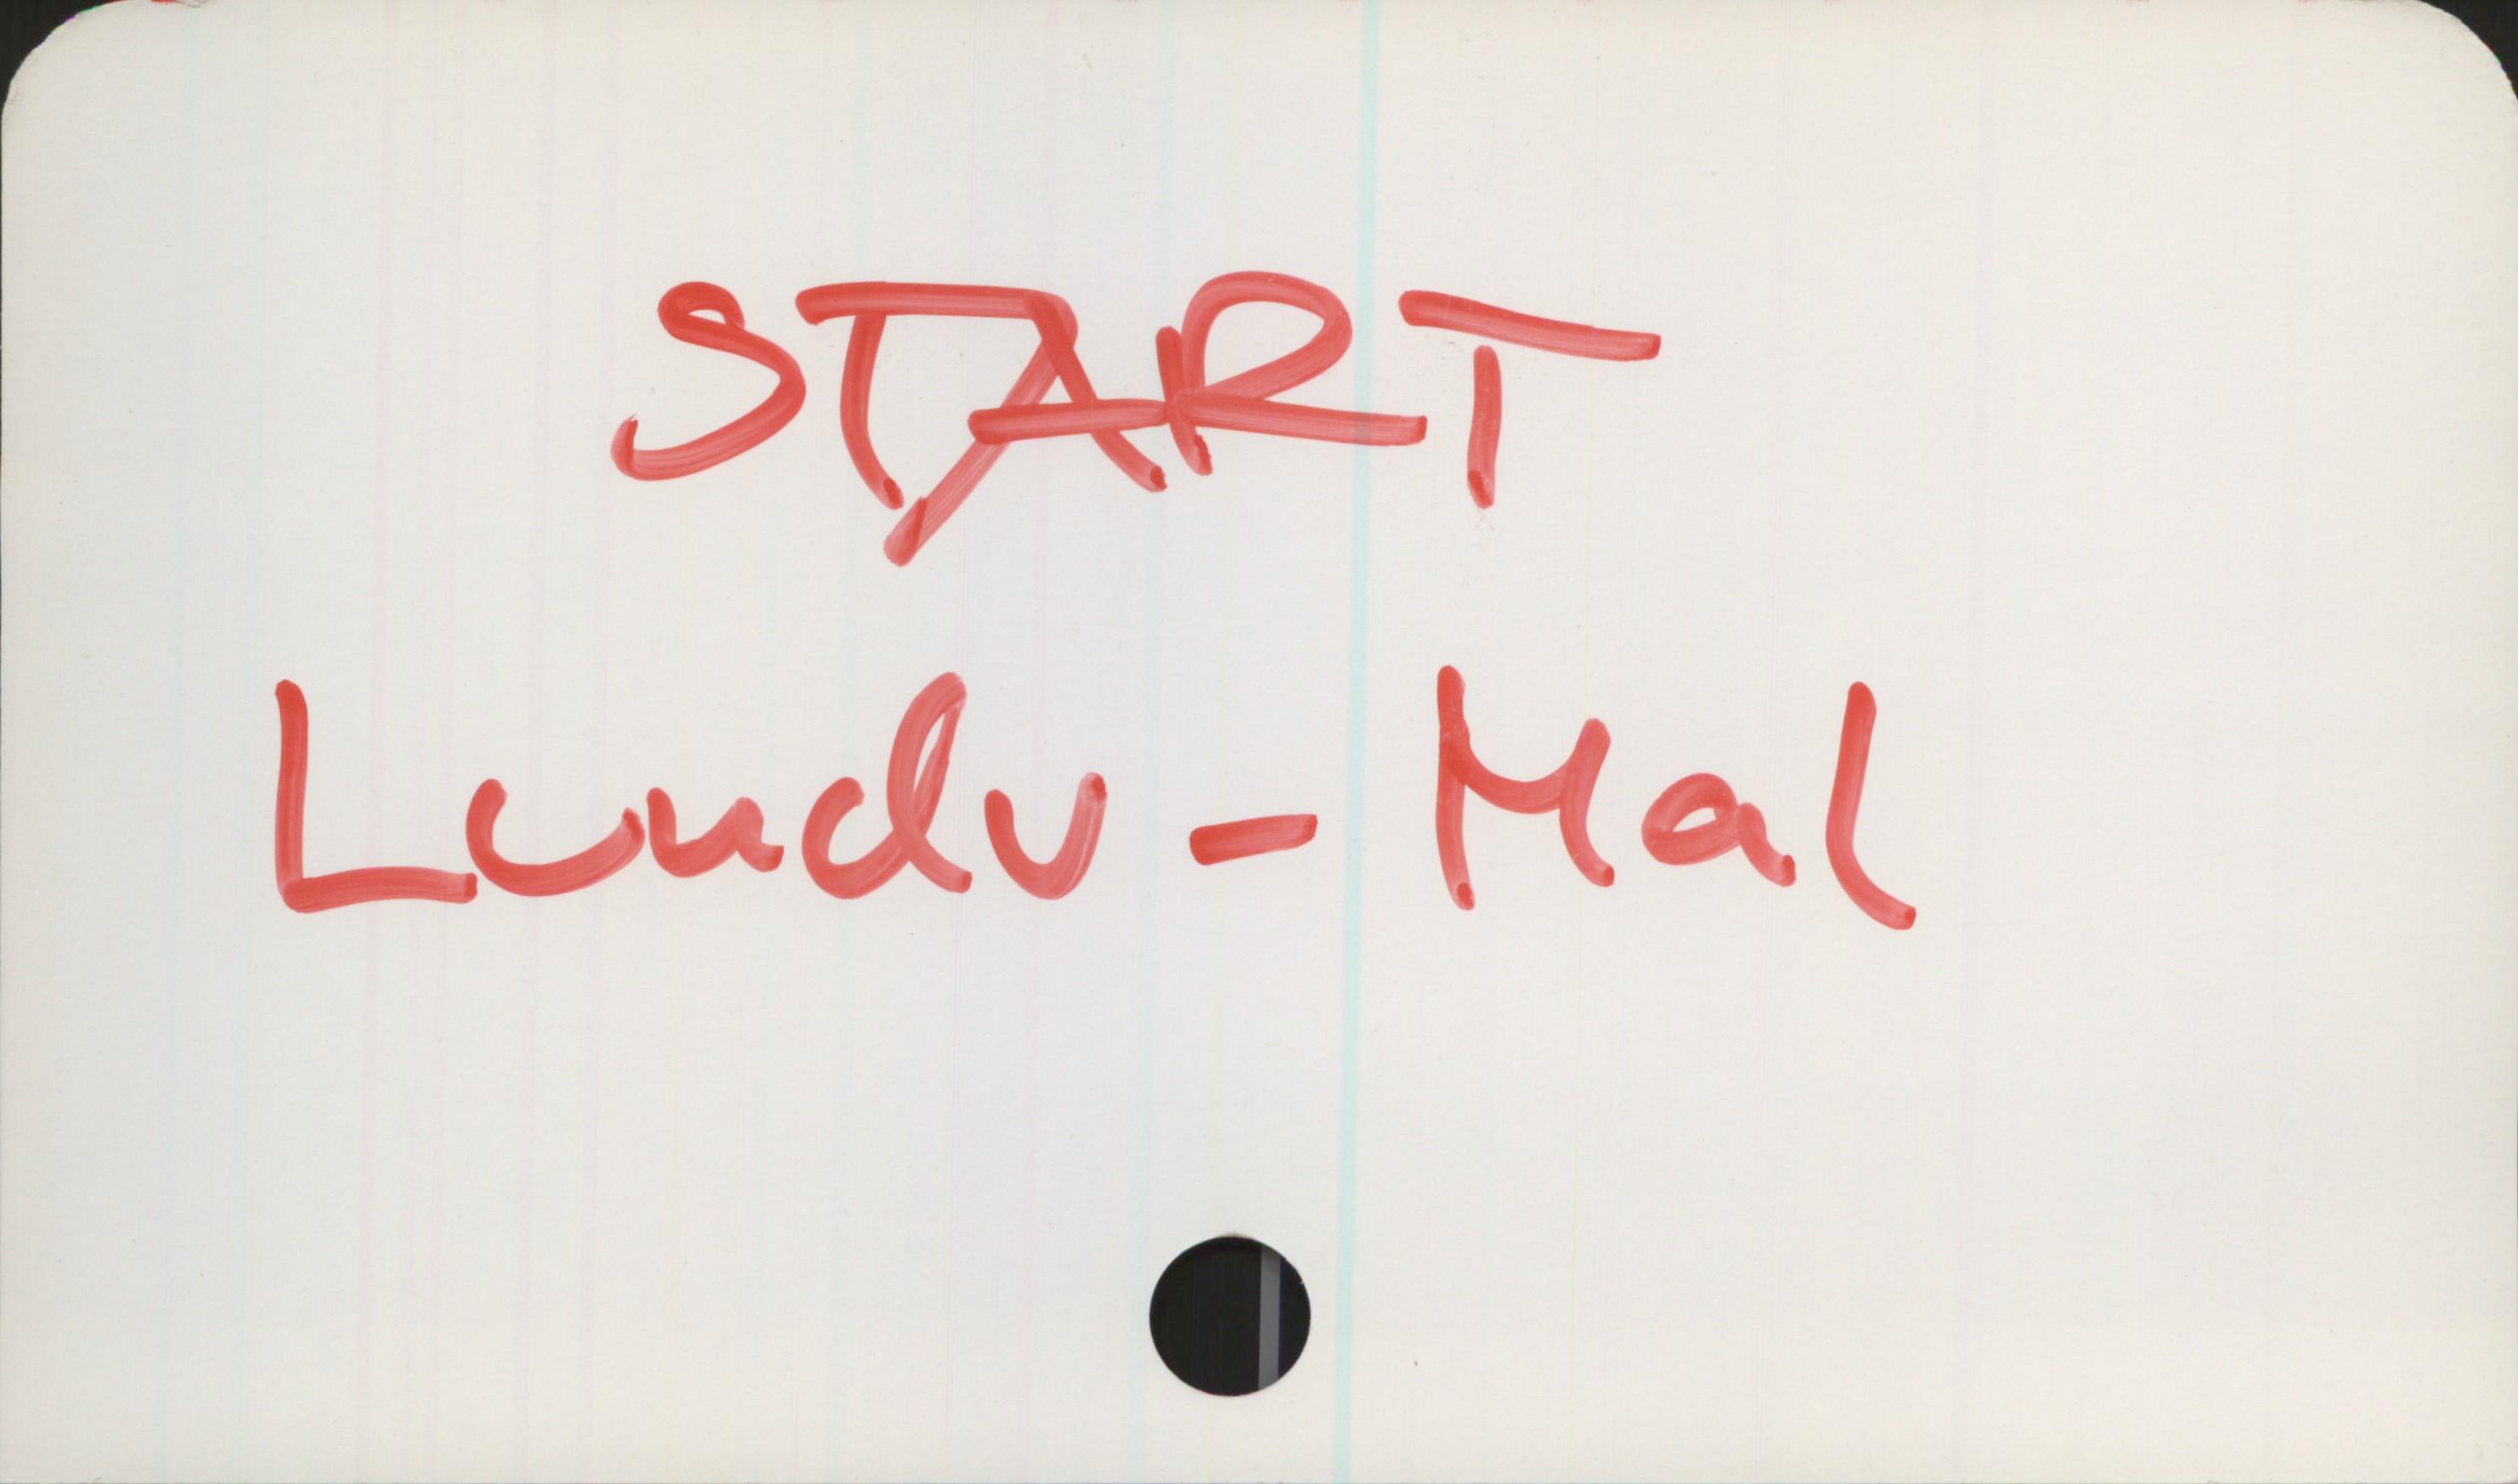 START START

Lundv - Mal